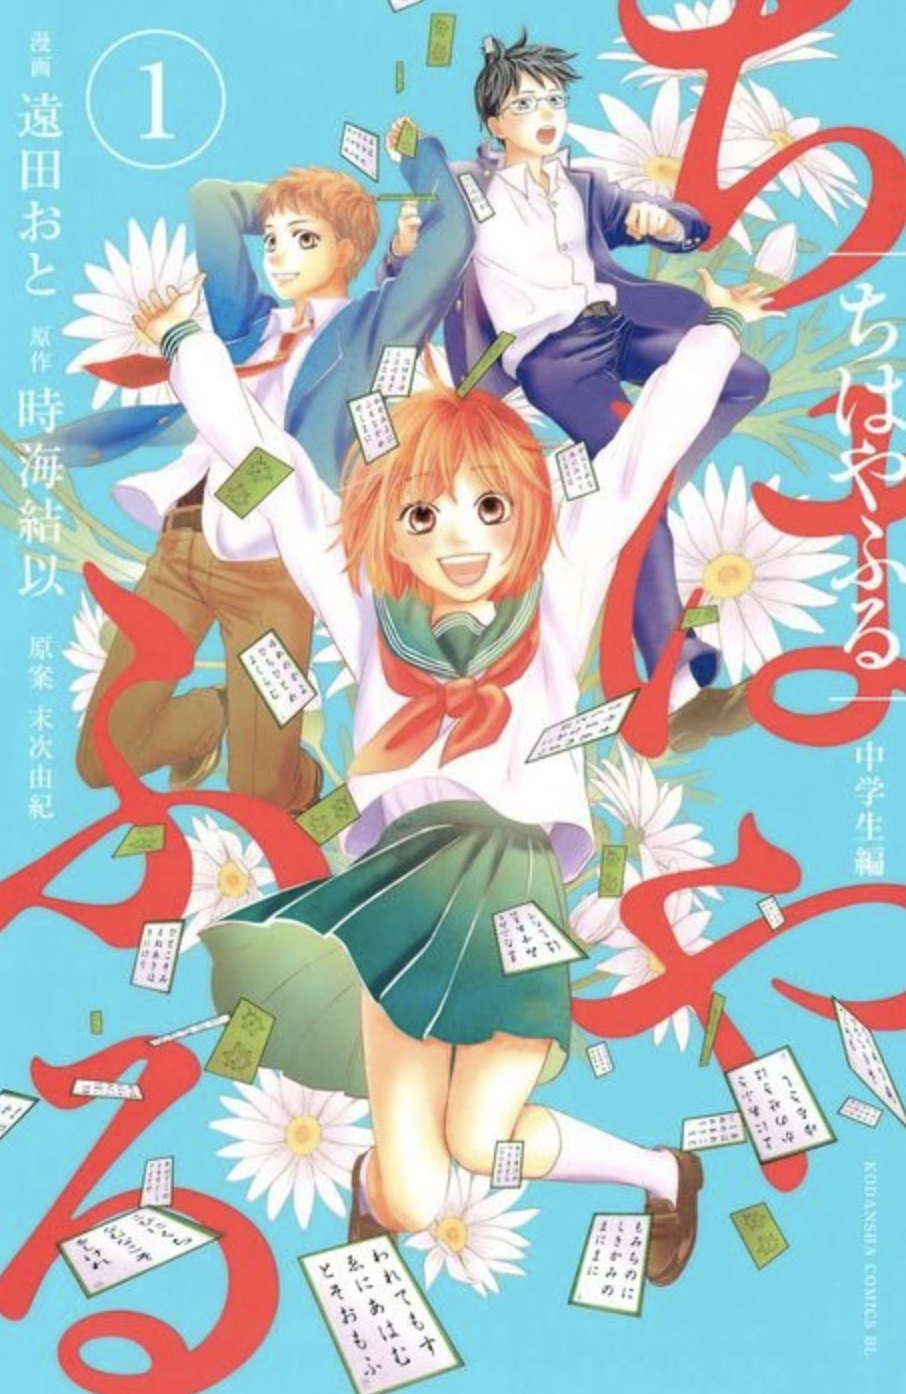 Chihayafuru Junior High Edition by Yuki Suetsugu and Oto Toda